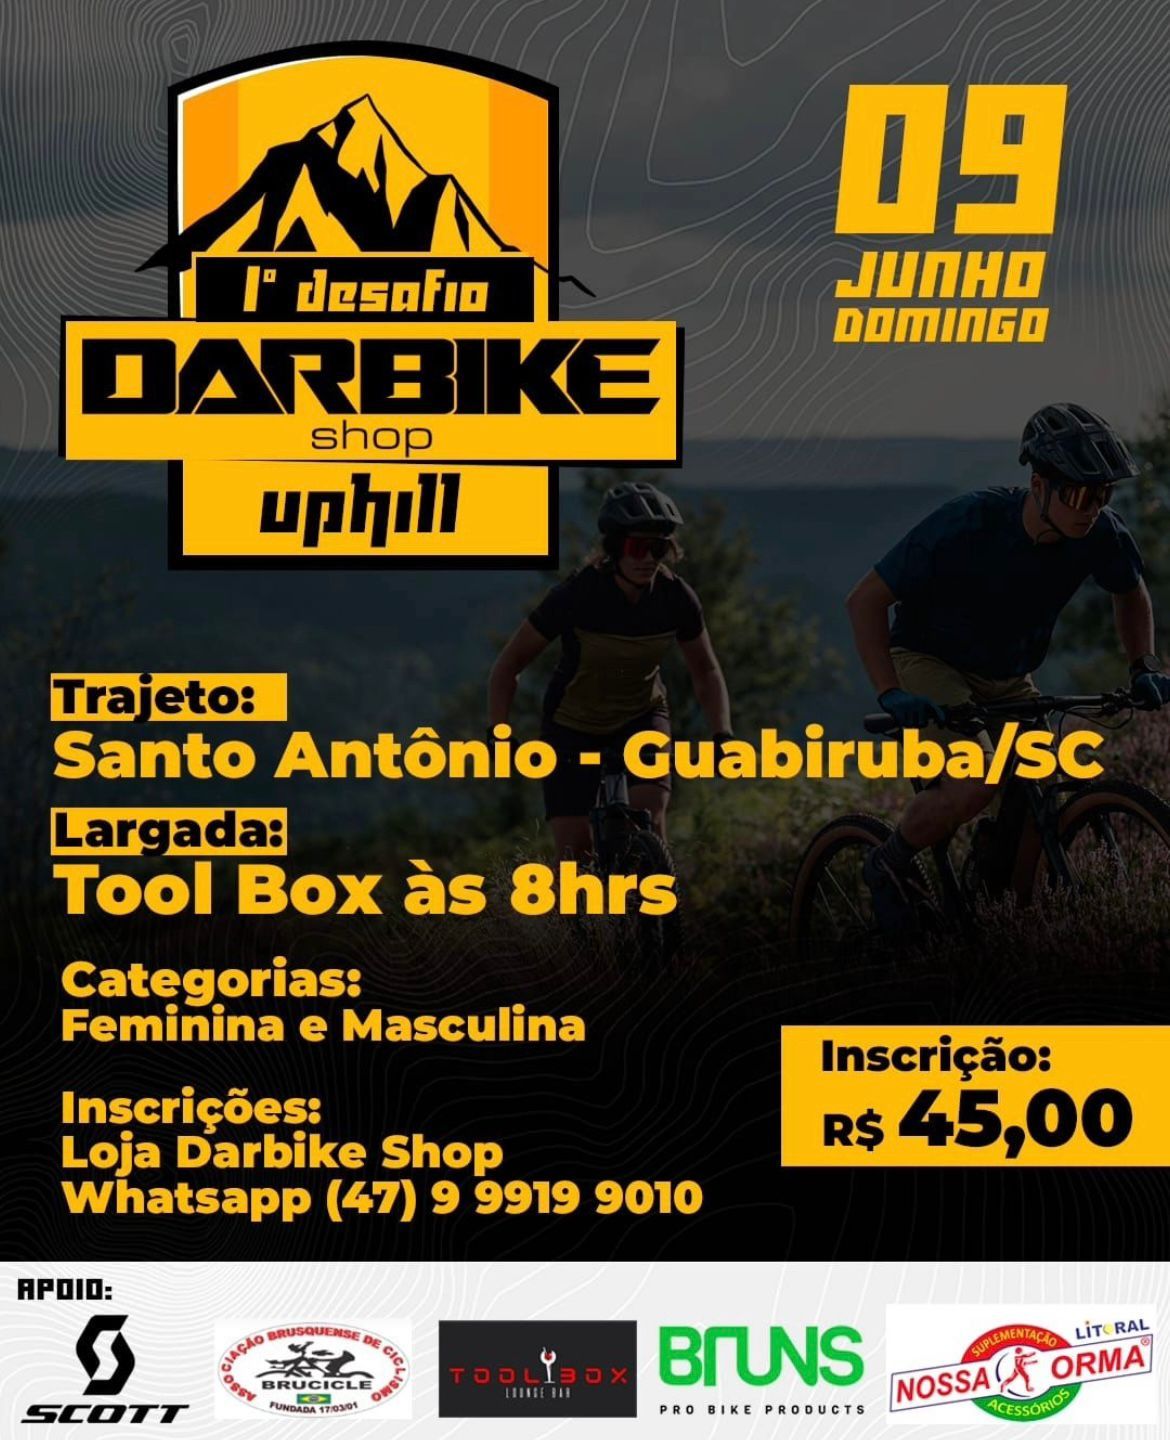 Desafio Darbike Shop Uphill de MTB - 1ª Edição